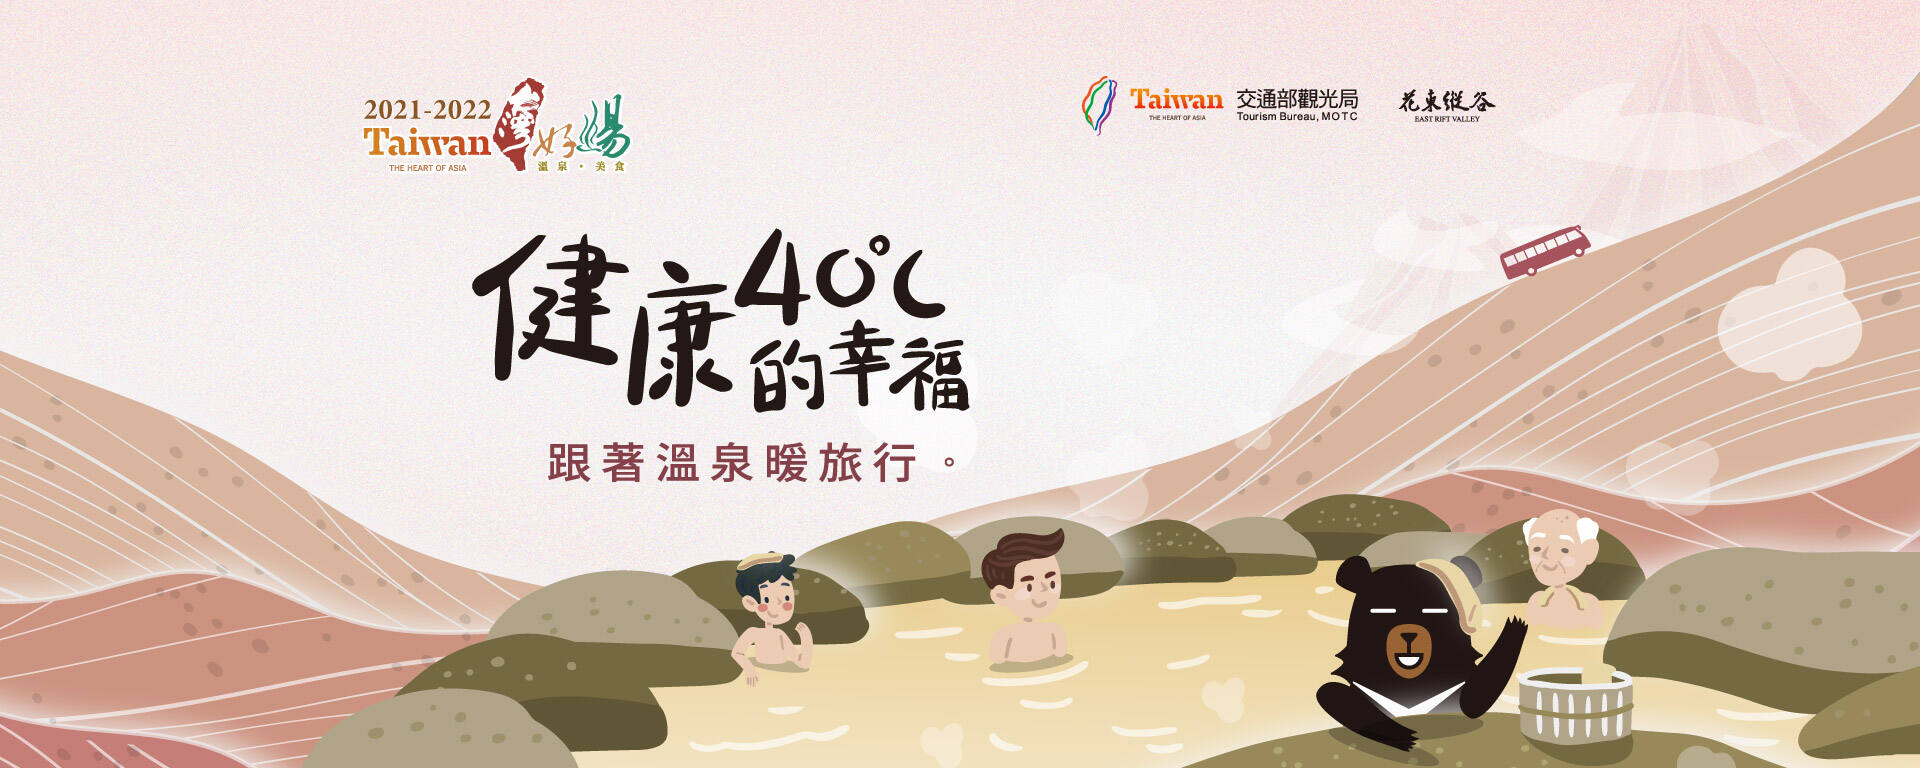 2021-2022台灣好湯-跟著溫泉暖旅行